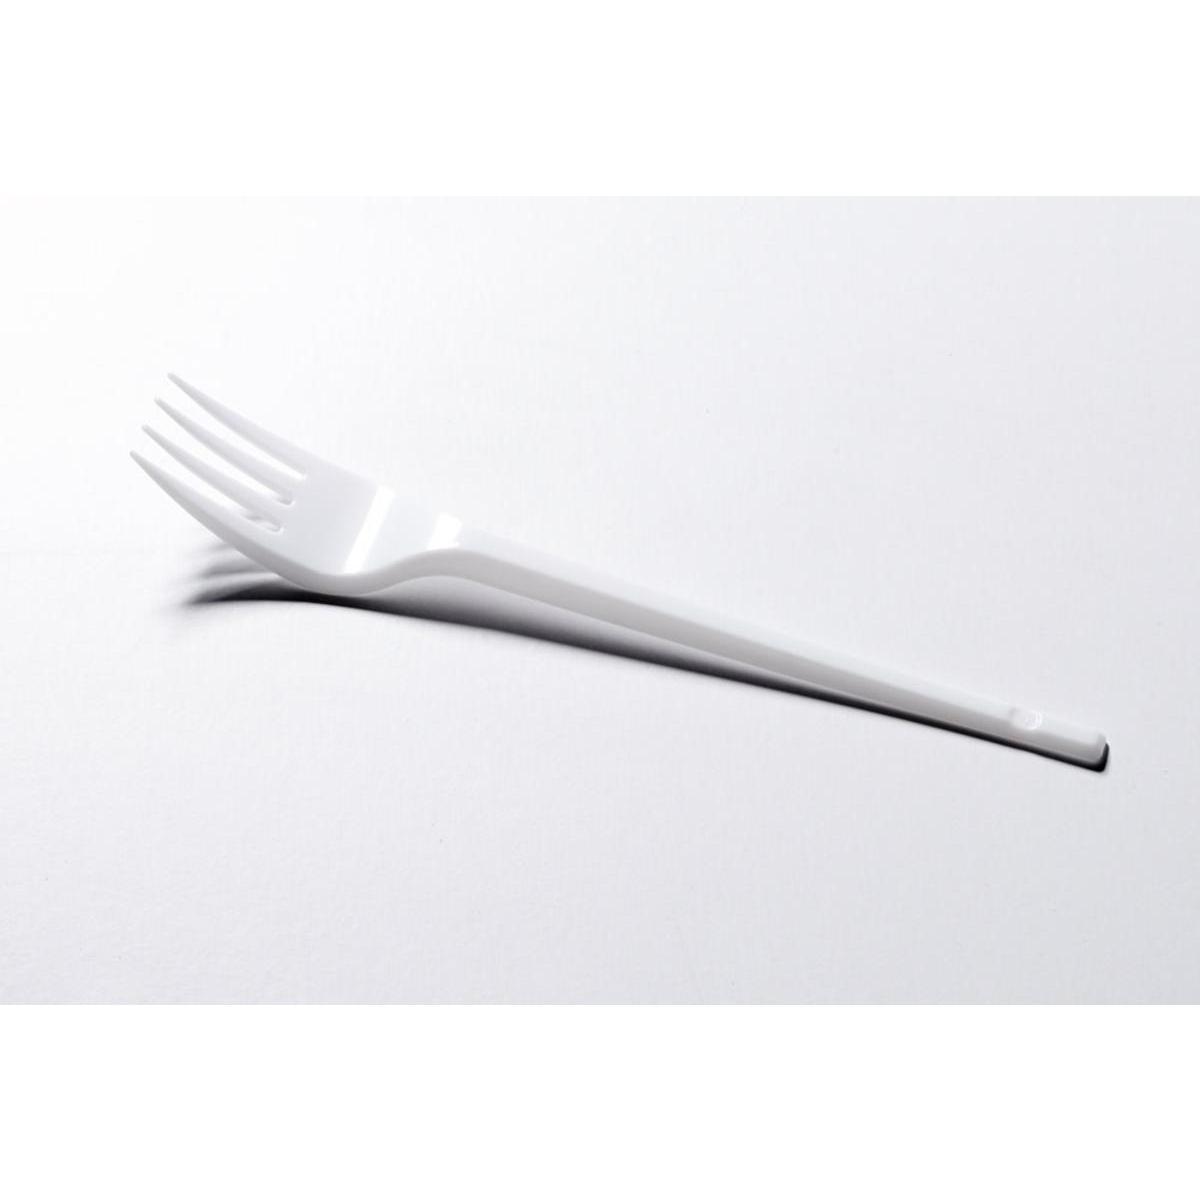 Lot de 20 fourchettes - plastique - 17 cm - Blanc